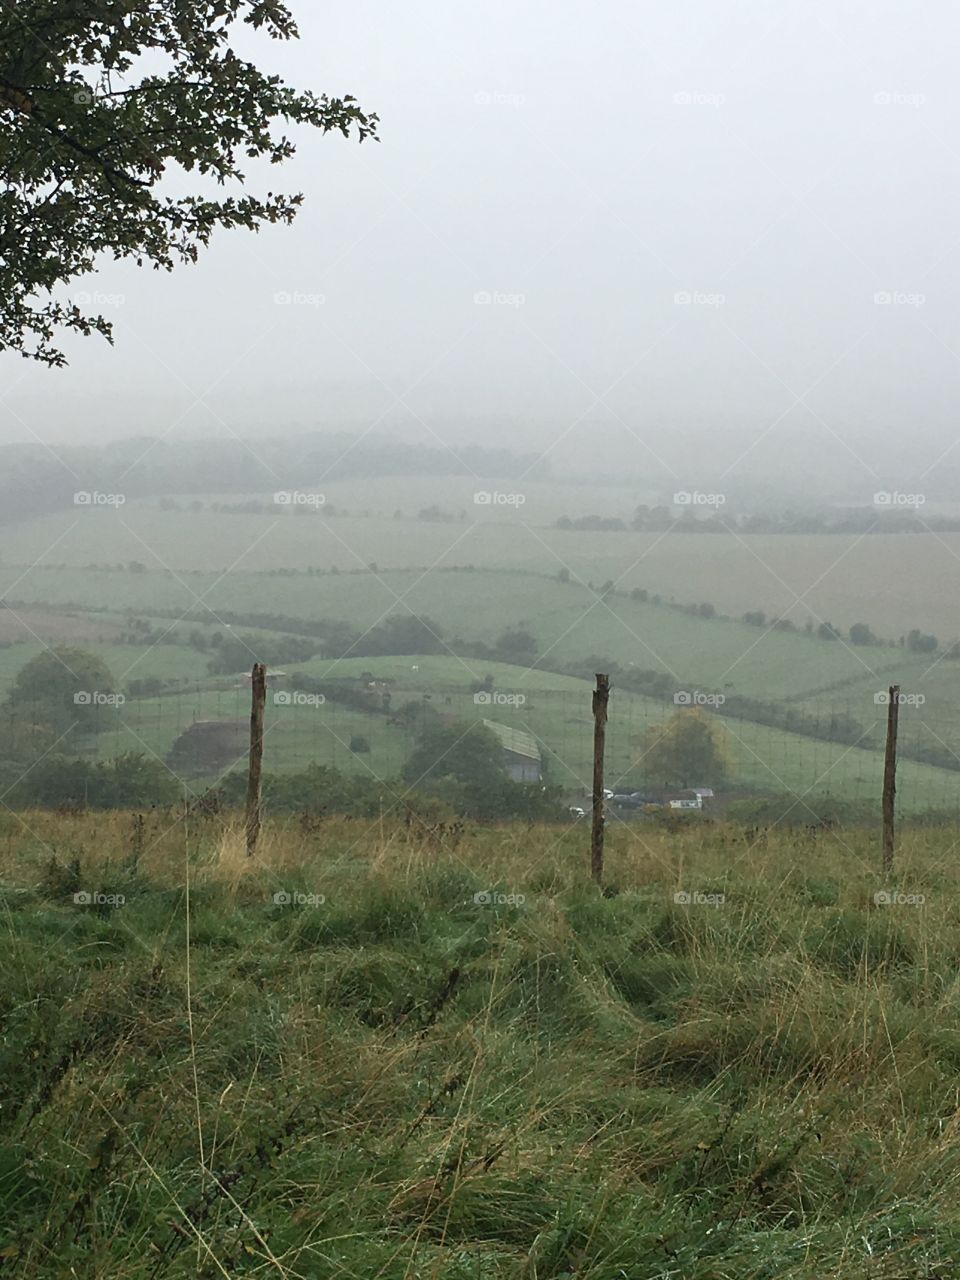 Farmland in England on a very foggy day 